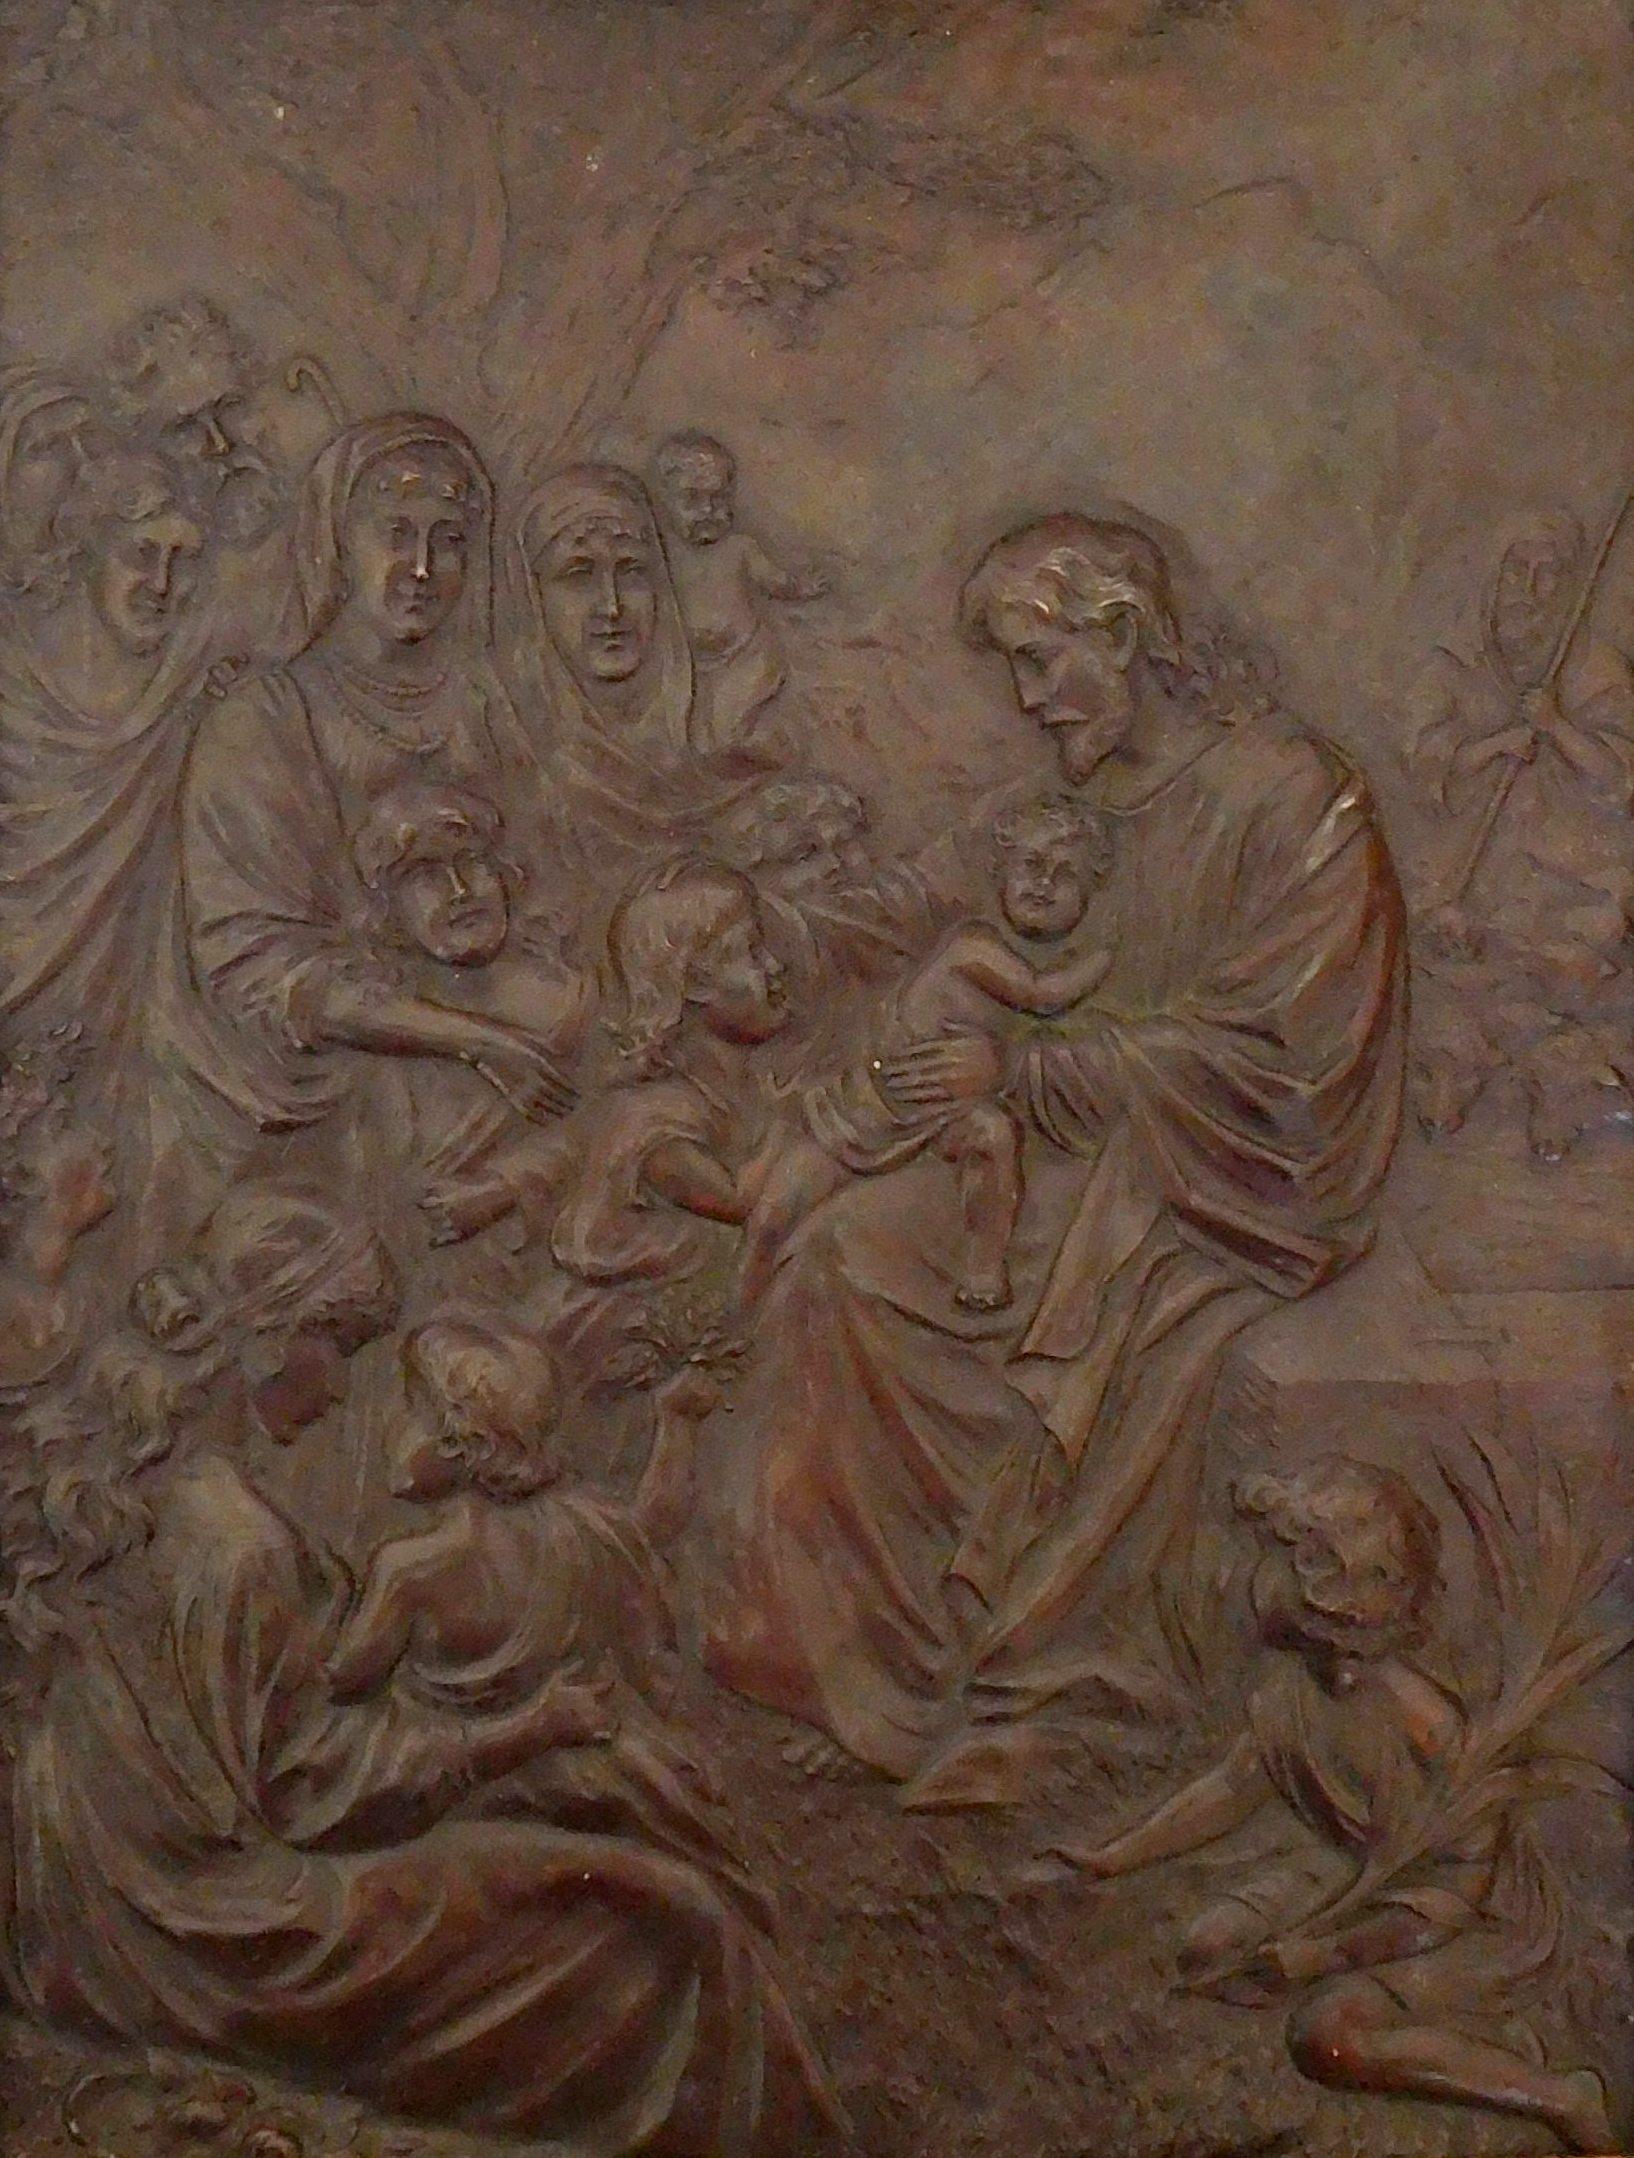 Antike französische Kupferarbeit, die Jesus Christus im Gespräch mit Kindern darstellt und die berühmte biblische Aufforderung 